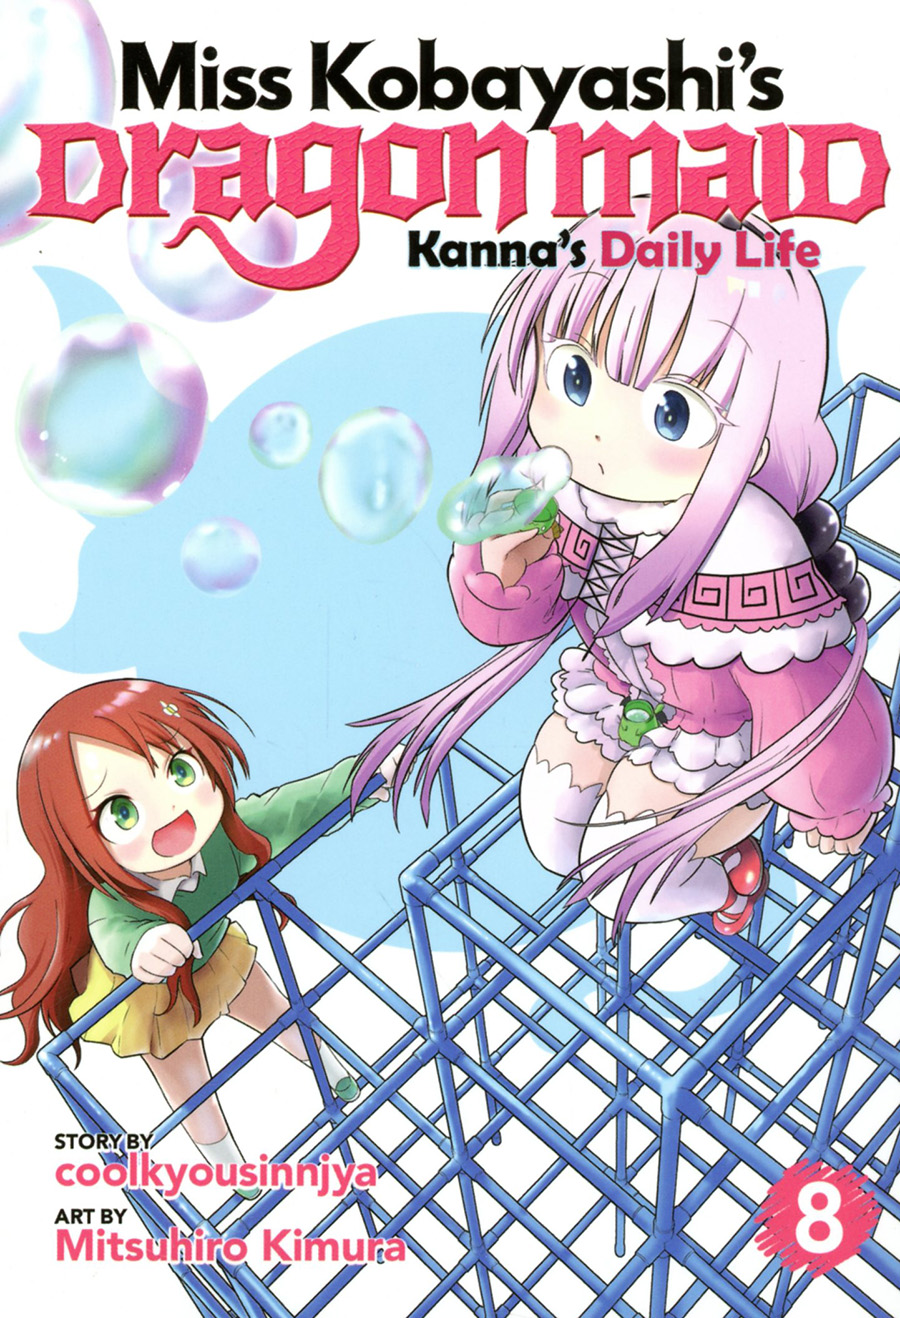 Miss Kobayashis Dragon Maid Kannas Daily Life Vol 8 GN